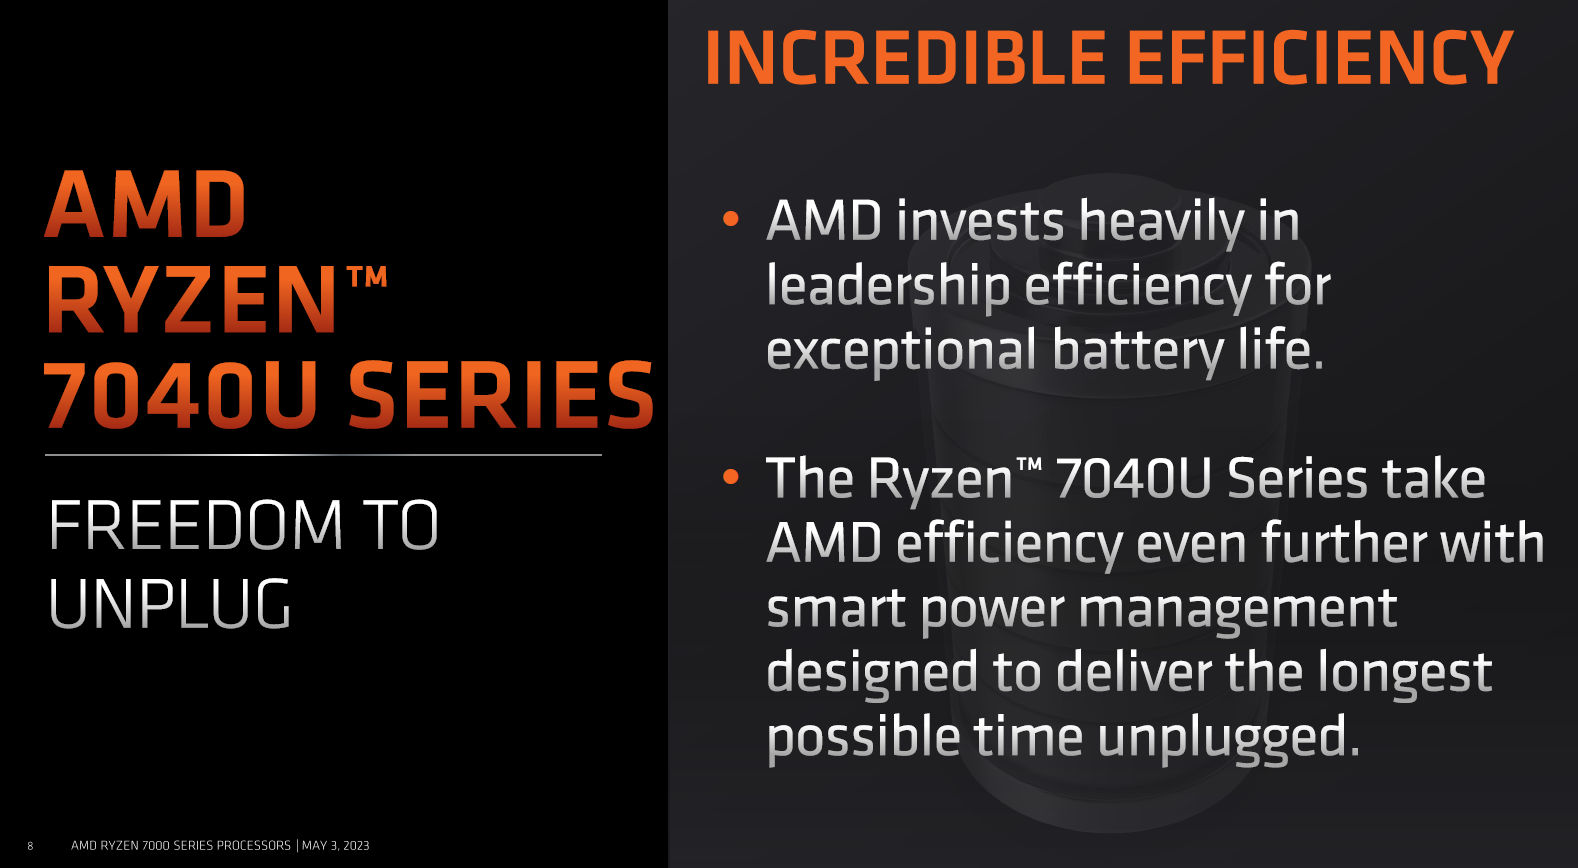 AMD-Ryzen-7040U-Slide-Deck-7.jpg